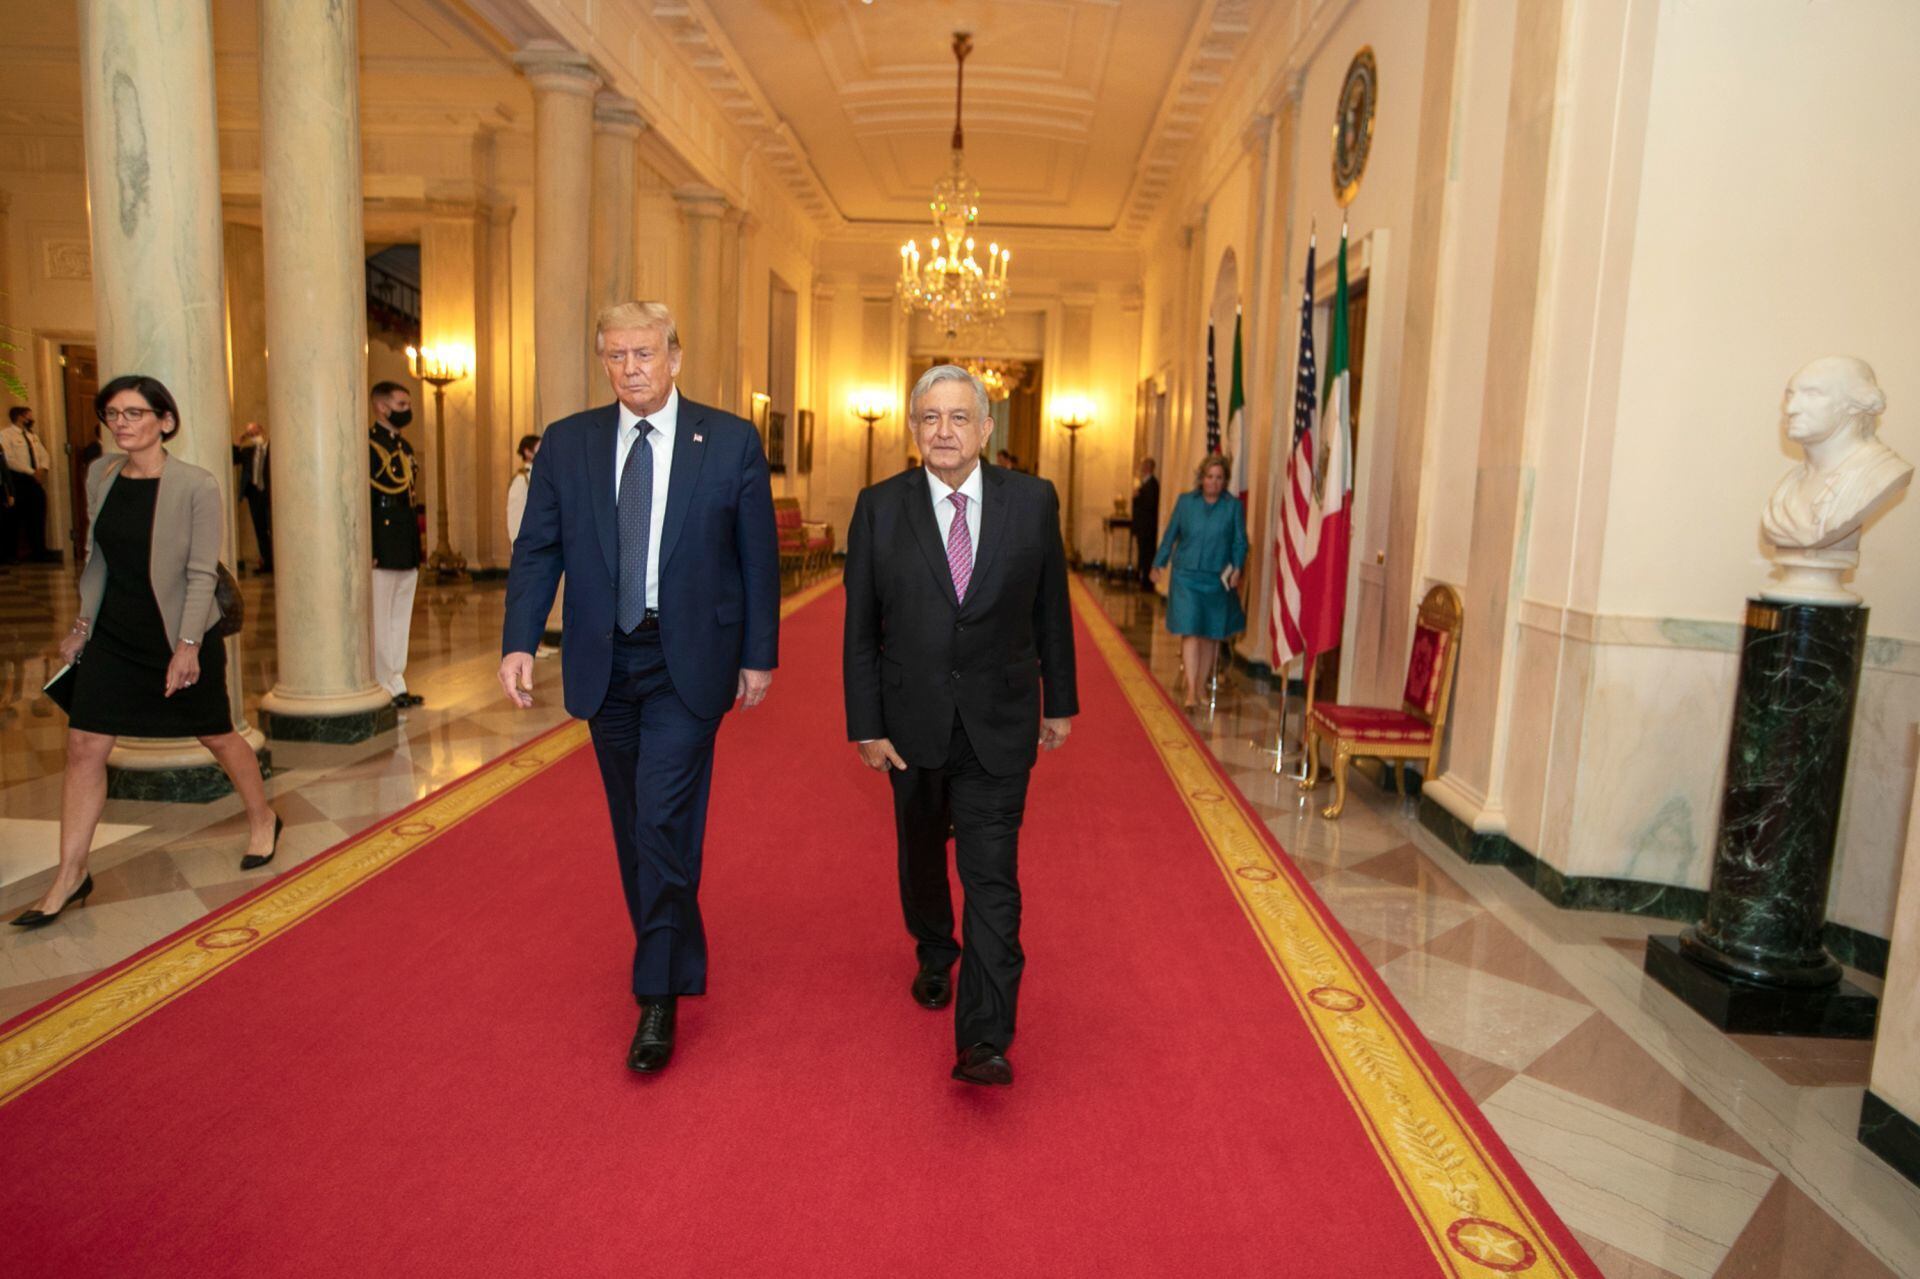 El presidente Trump ofreció una cena en la Casa Blanca en honor al López Obrador en julio de 2020.